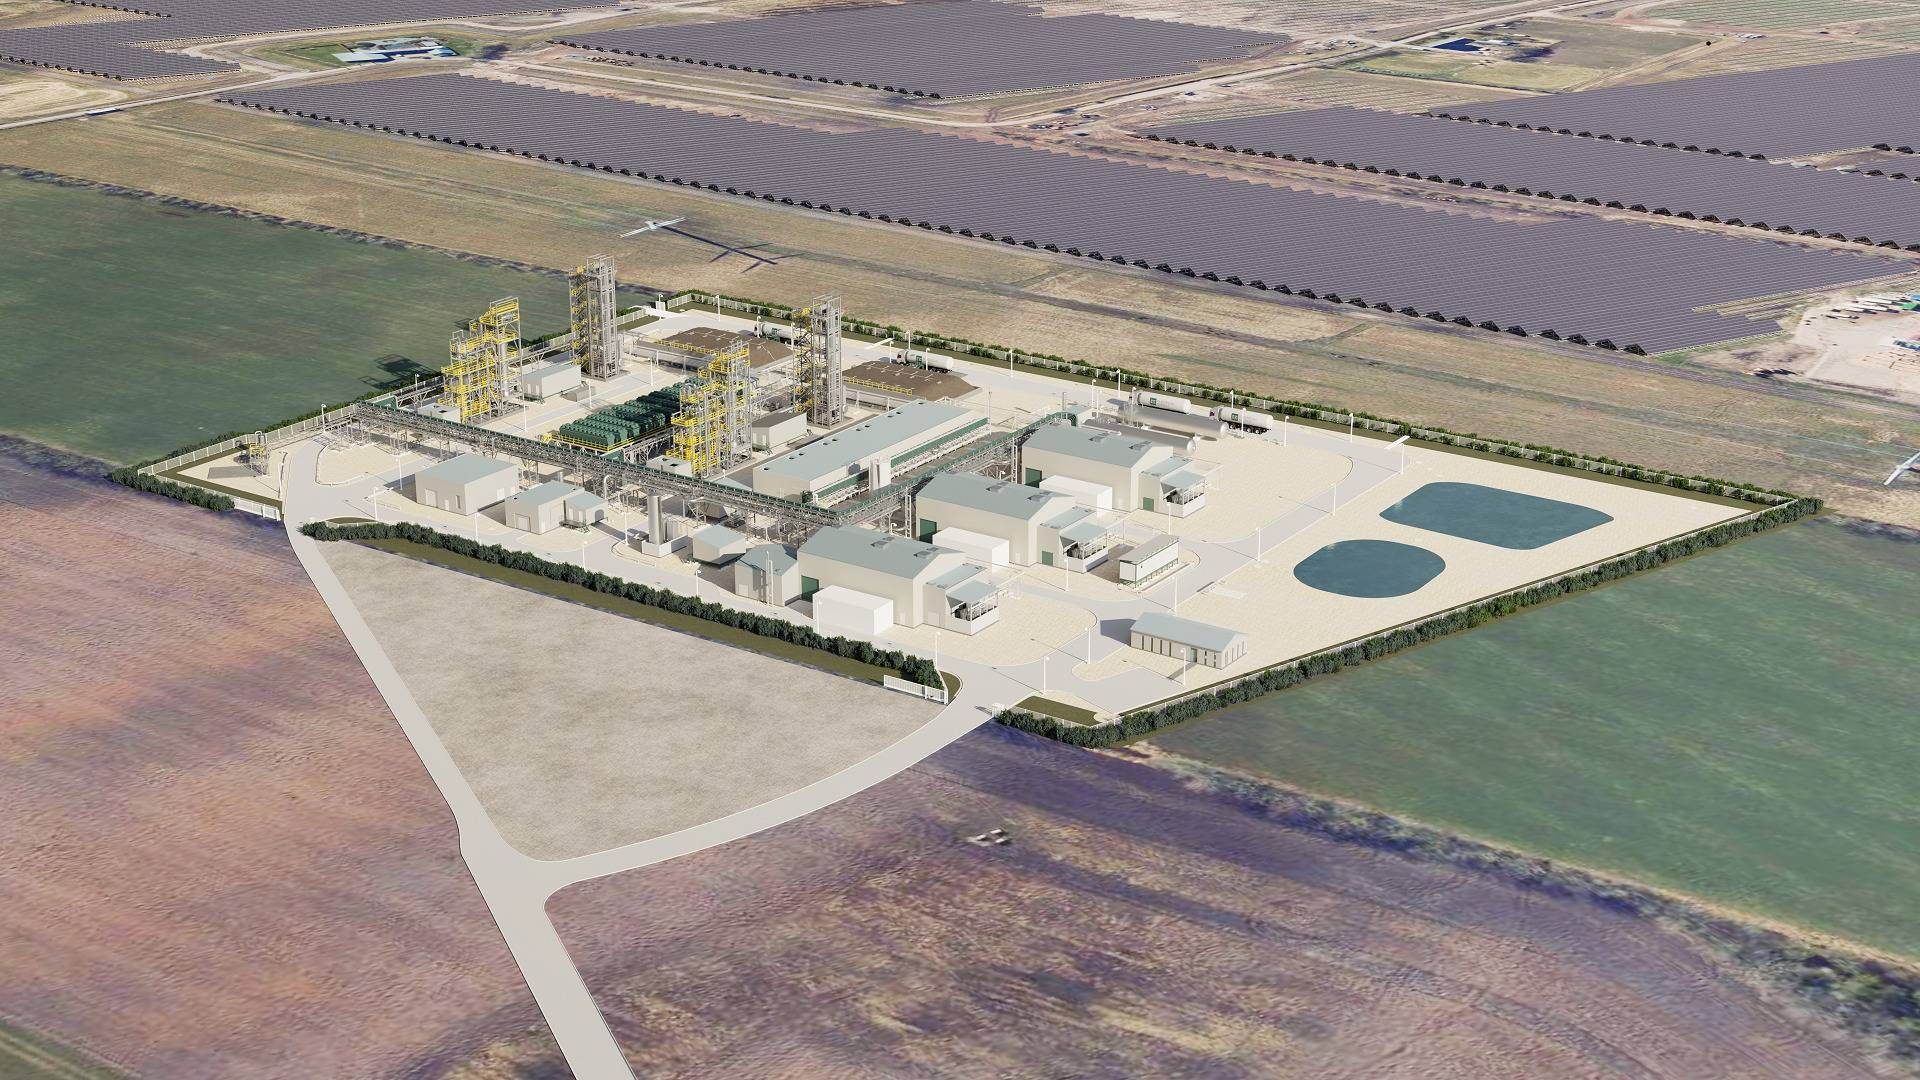 På billedet ses en visualisering af European Energys danske e-metanolsprojekt ved Kassø, som udvikleren er ved at færdiggøre. Anlægget står til at blive verdens største e-metanolanlæg med en produktion på 32.000 tons e-metanol om året. | Foto: European Energy/pr.